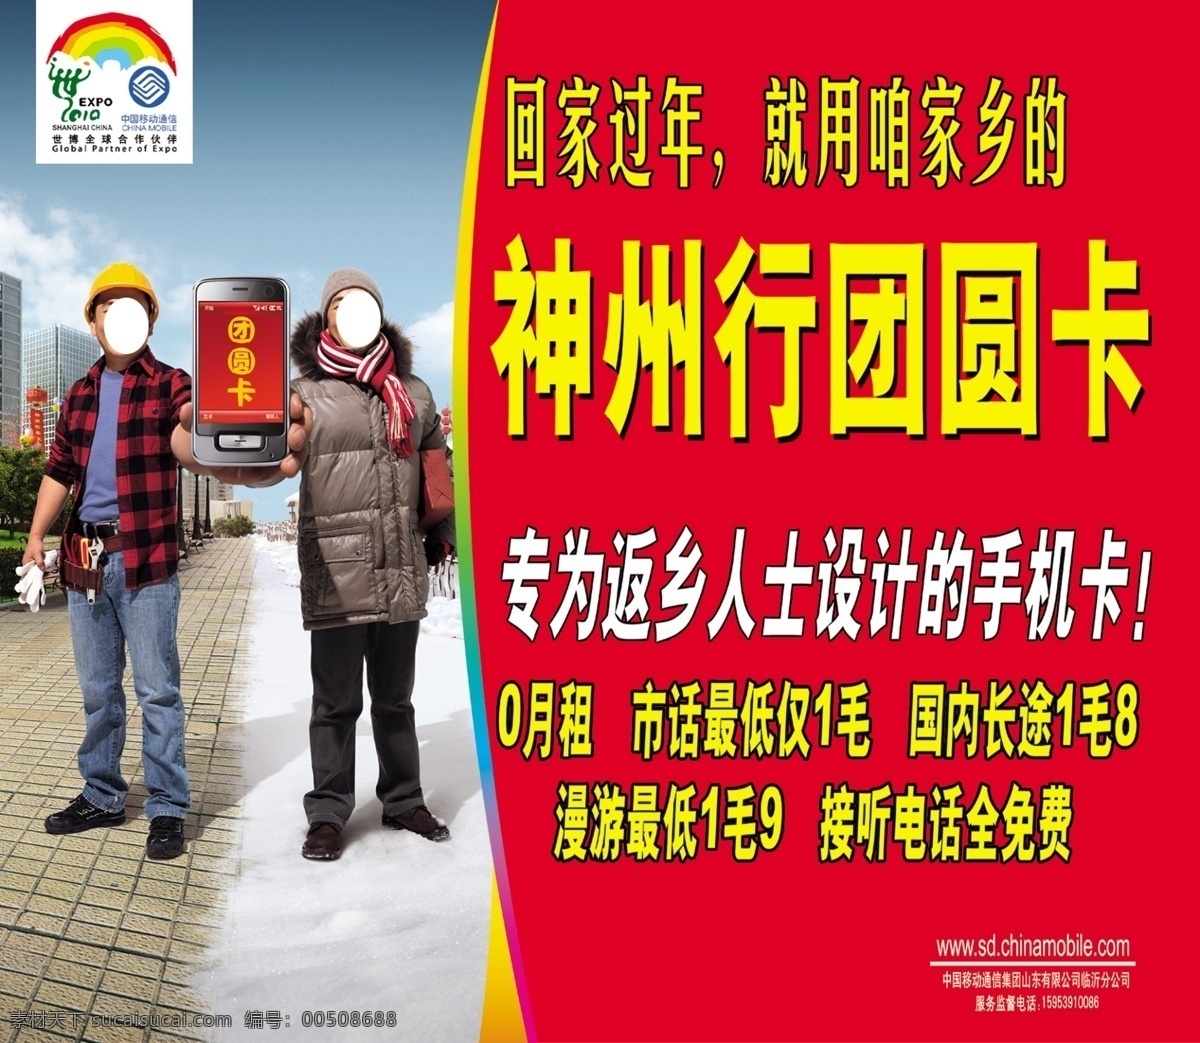 房屋 广告设计模板 路 手拿手机 天空 源文件 中国移动标志 中国移动 神州行 团圆 卡 海报 世博 全球 合作伙伴 两个人物 其他海报设计